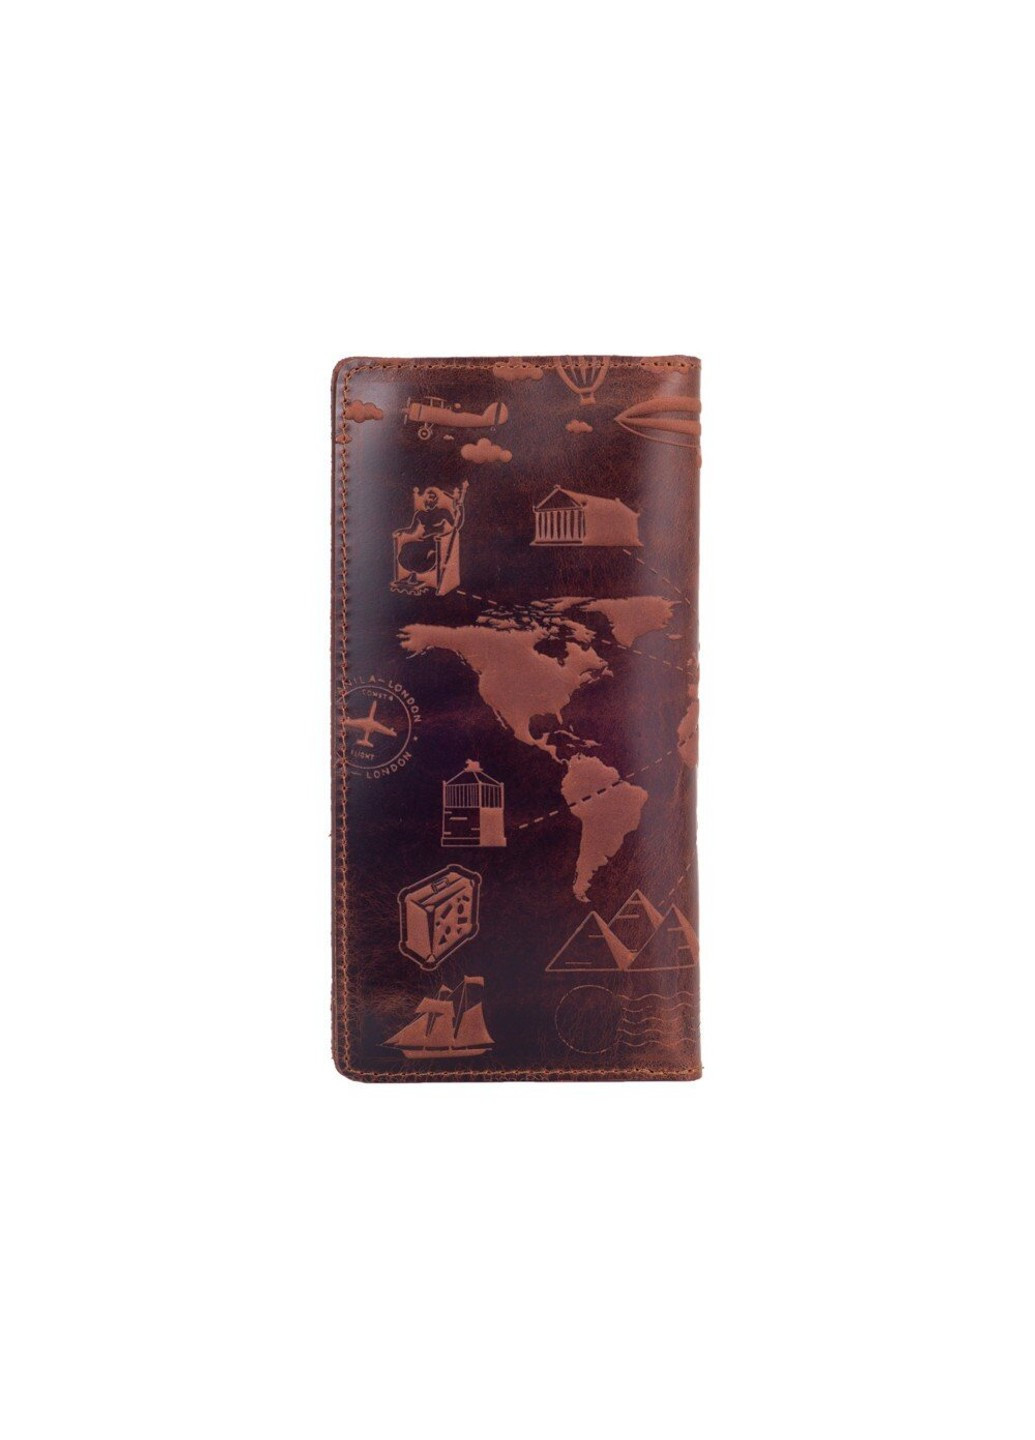 Кожаный бумажник WP-05 7 wonders of the world коричневый Коричневый Hi Art (268371150)